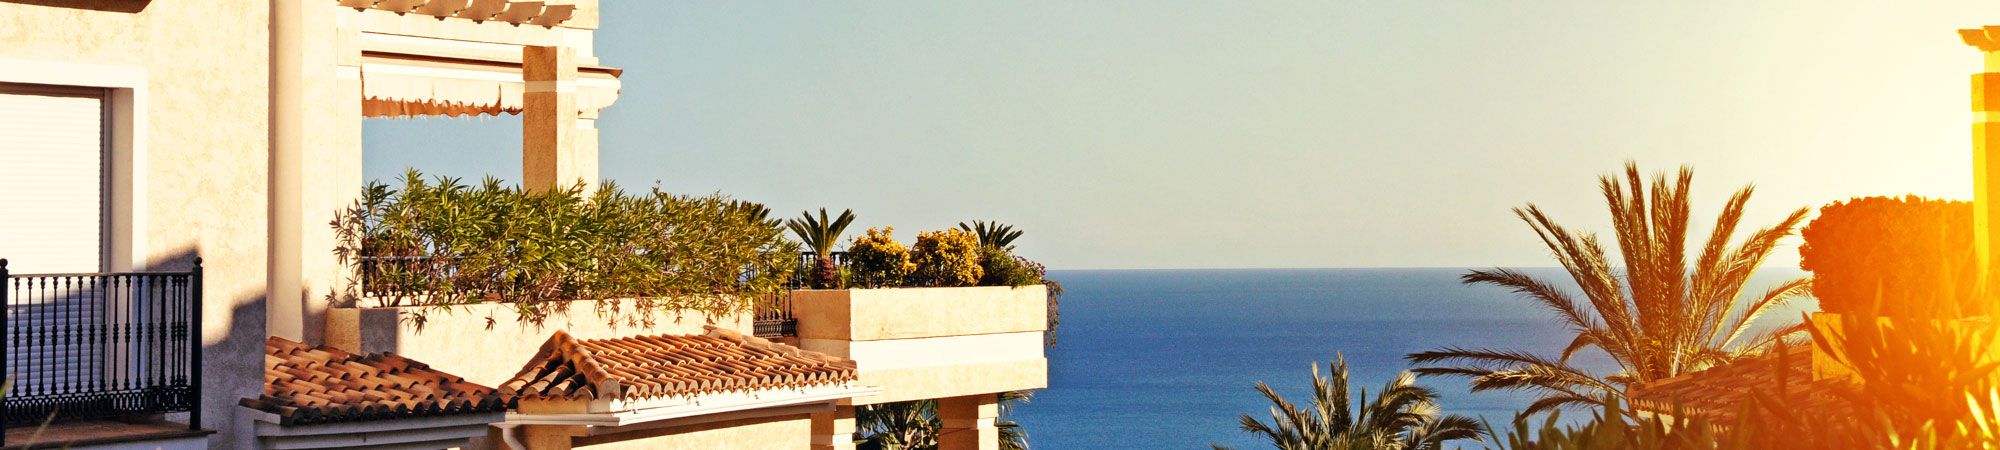 Amplia oferta de pisos, oficinas, locales, garajes, naves  en venta en Santa Cruz de Tenerife y la Laguna